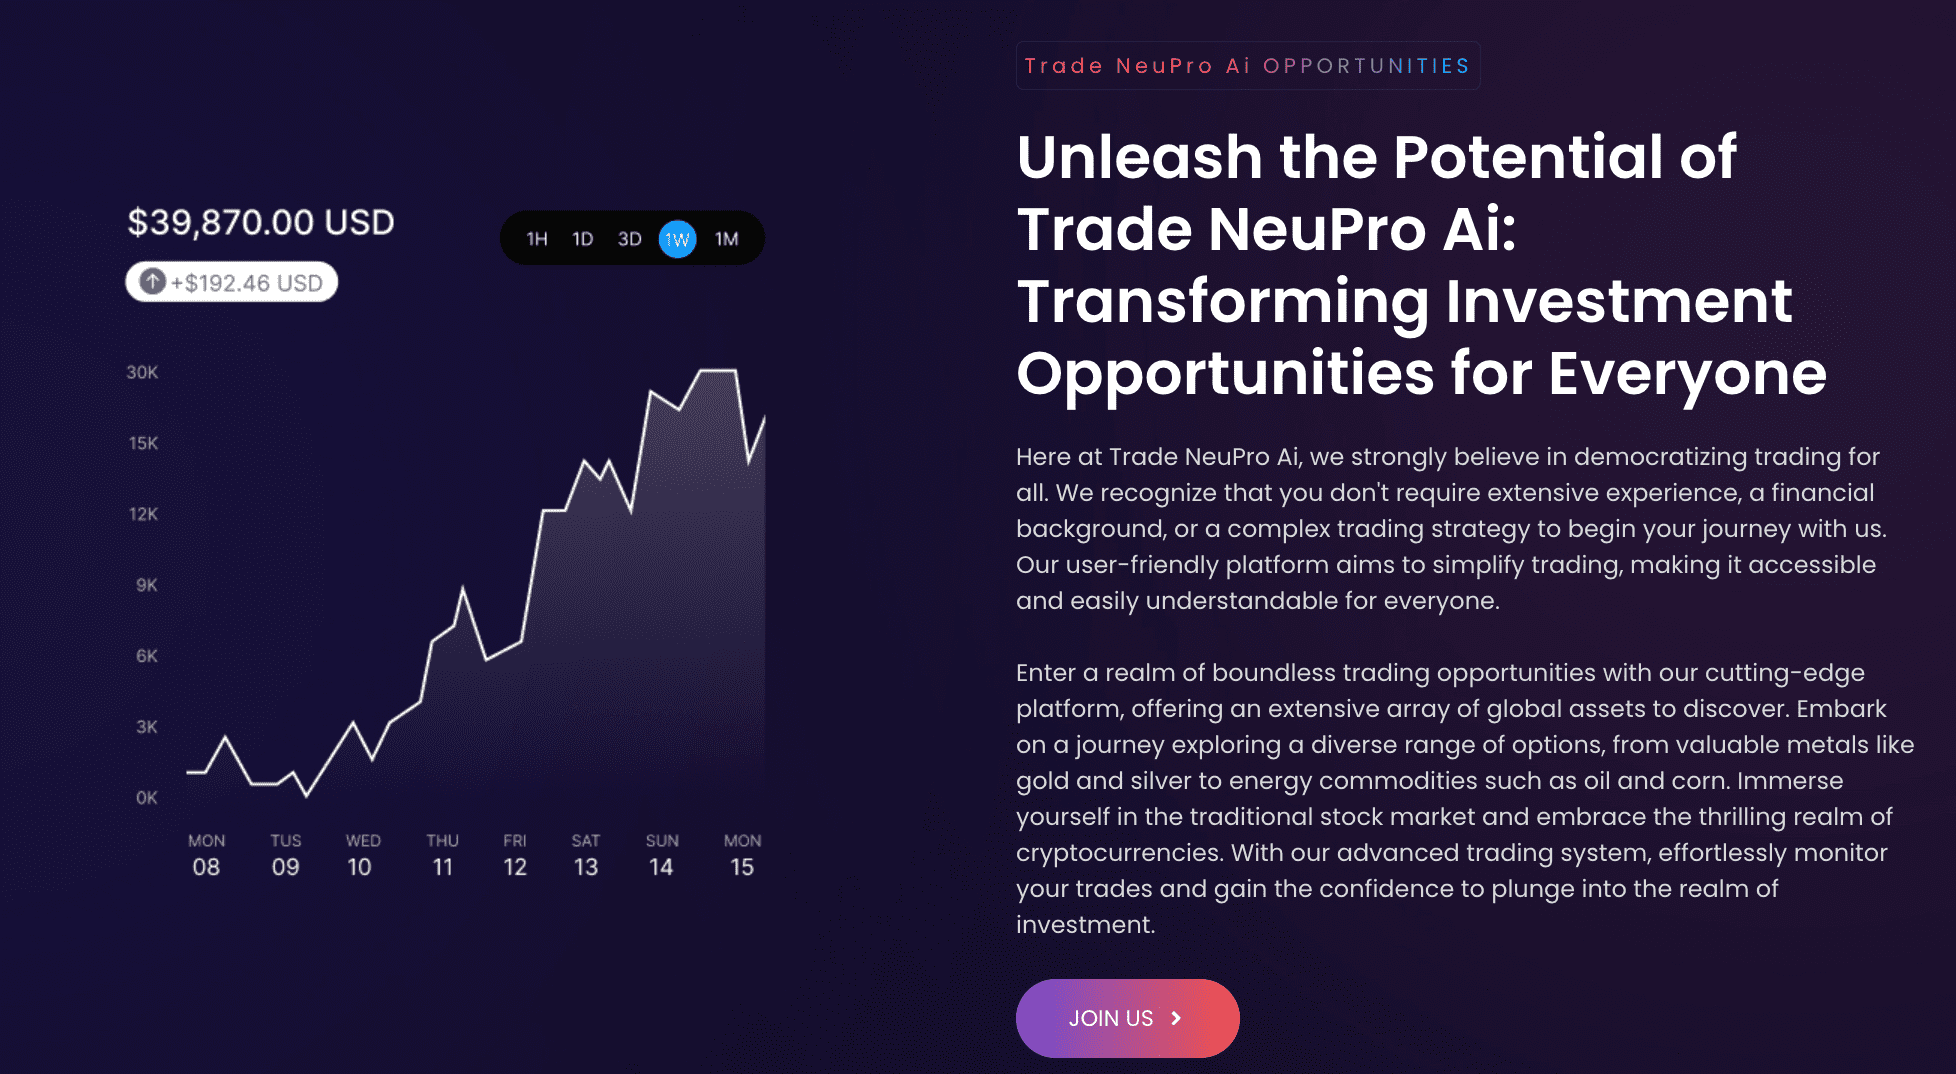 Trade NeuPro 100 (V 500) opportunities